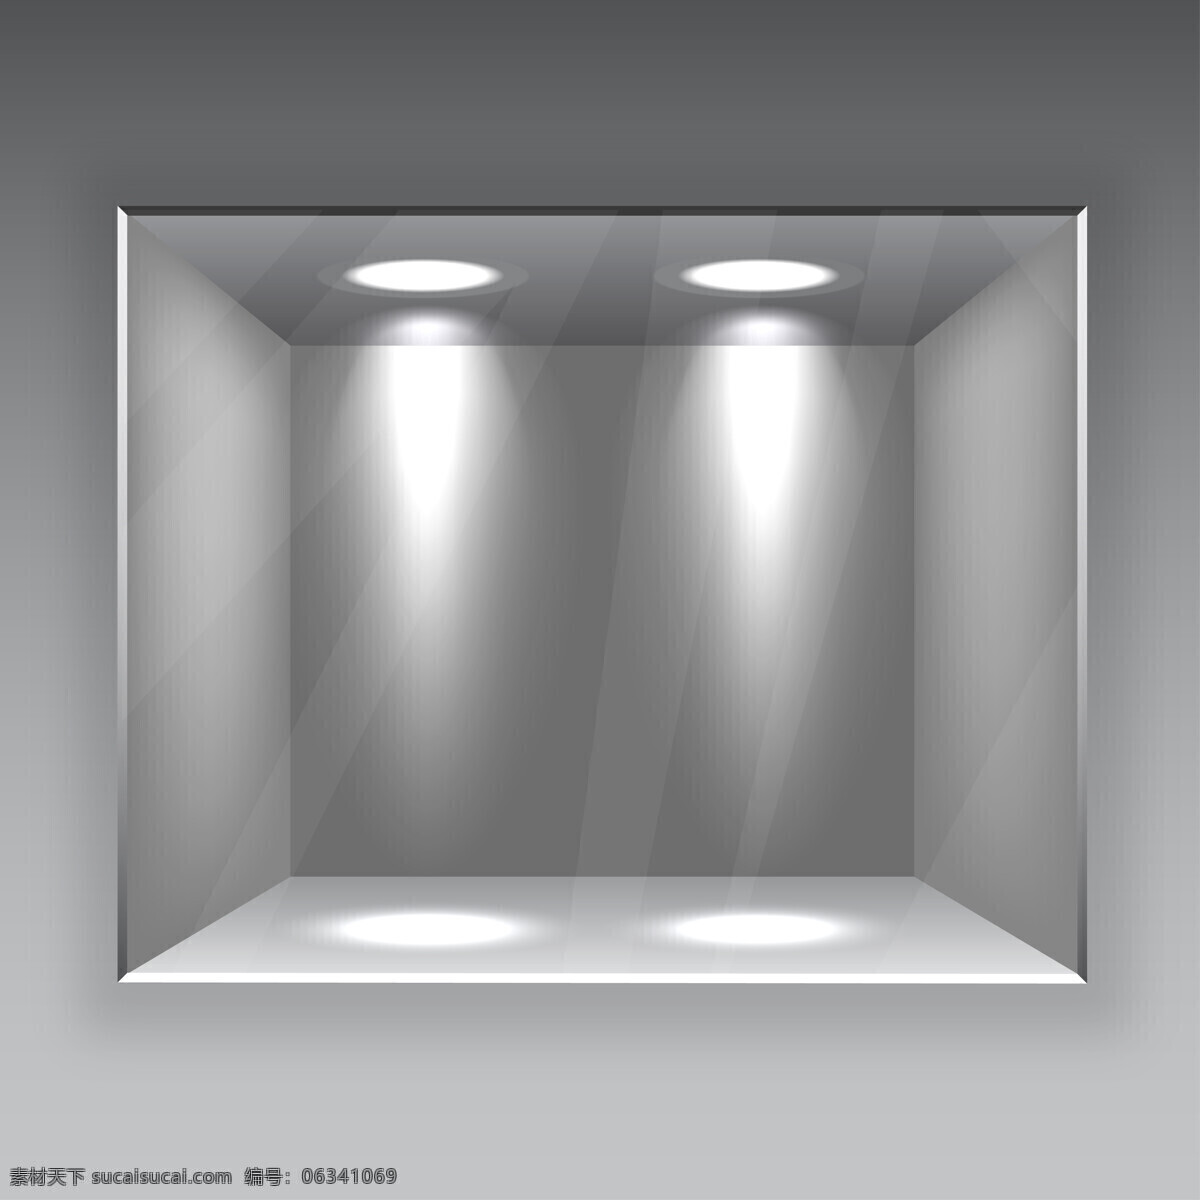 银色 展台 方框 展示台 3d展示 展架 聚光灯 其他类别 生活百科